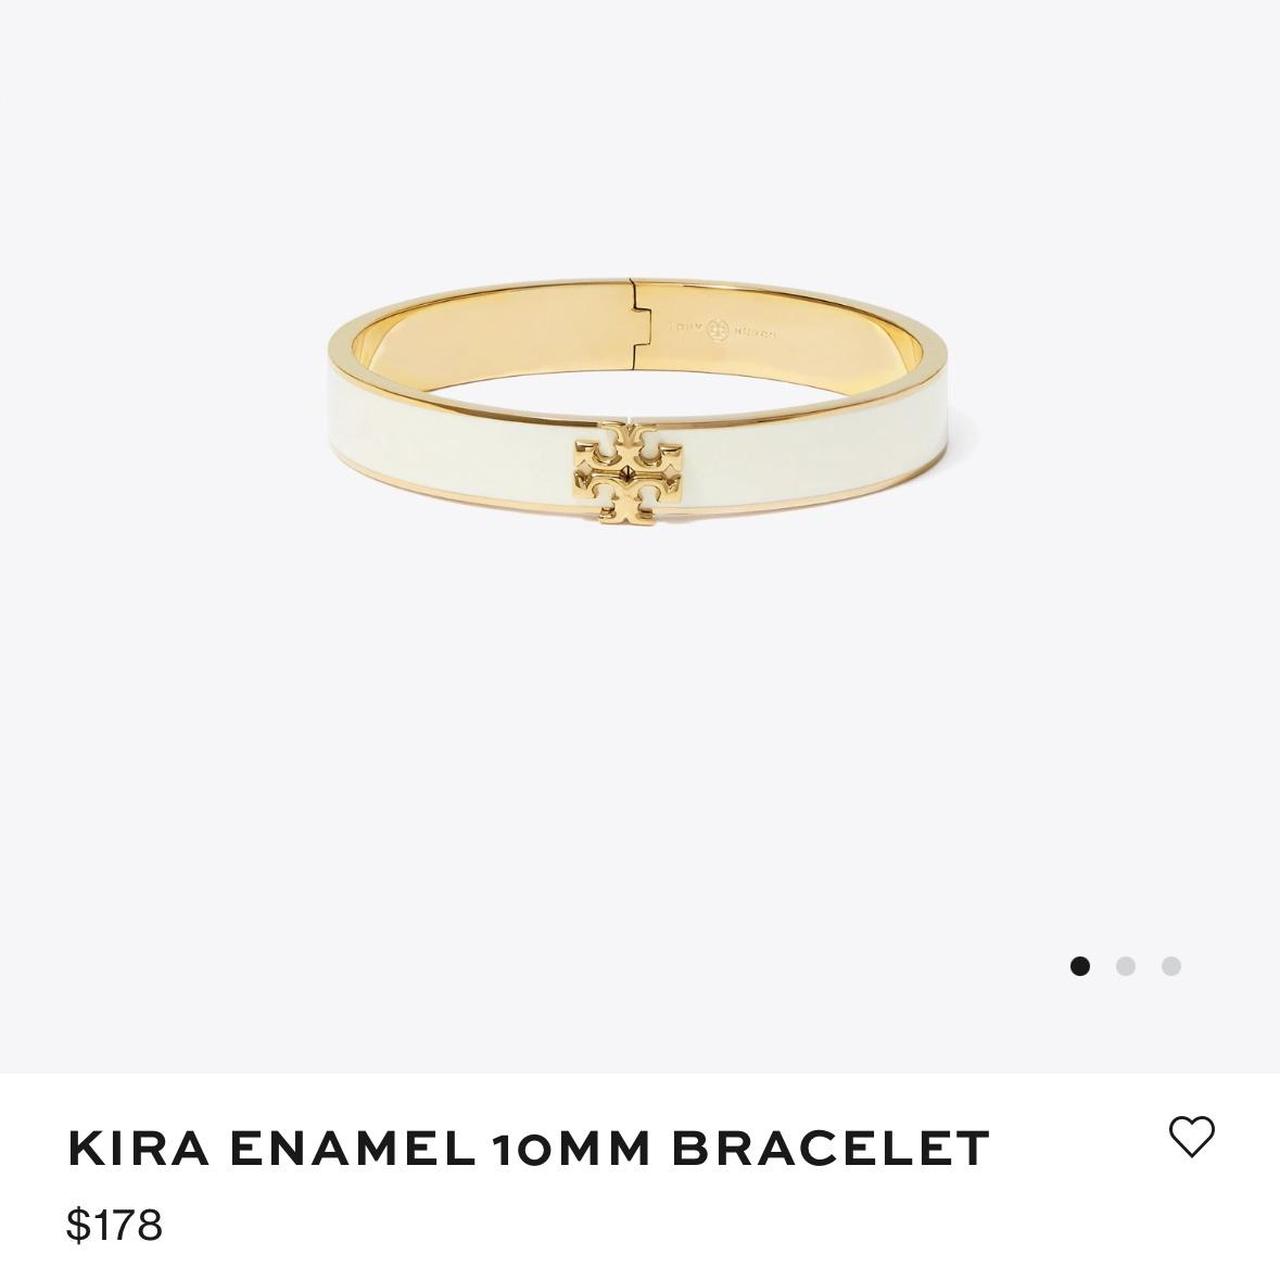 Kira Enamel 10mm Bracelet: Women's Jewelry, Bracelets